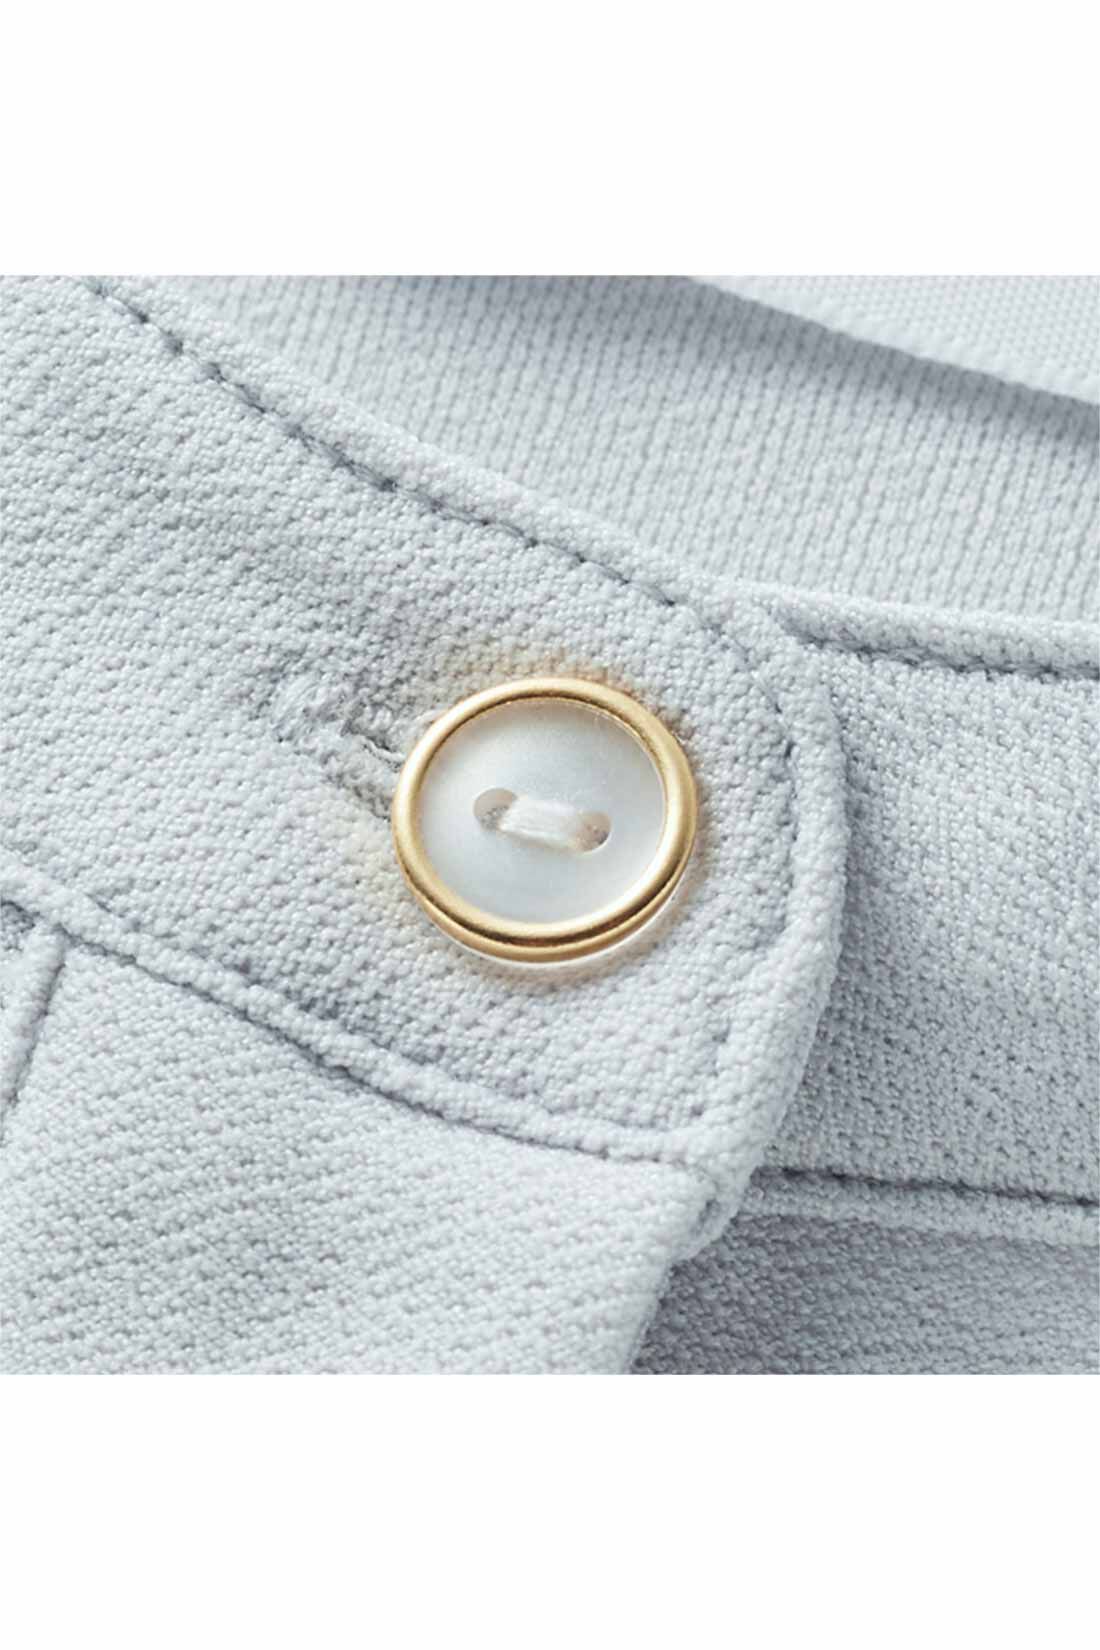 IEDIT[イディット]　後ろ姿も美しい伸びやかな抗菌防臭 バックプリーツトップス〈ブラック〉|衿とカフスに、きちんと感のあるゴールドの縁飾りボタンをアクセントとして。